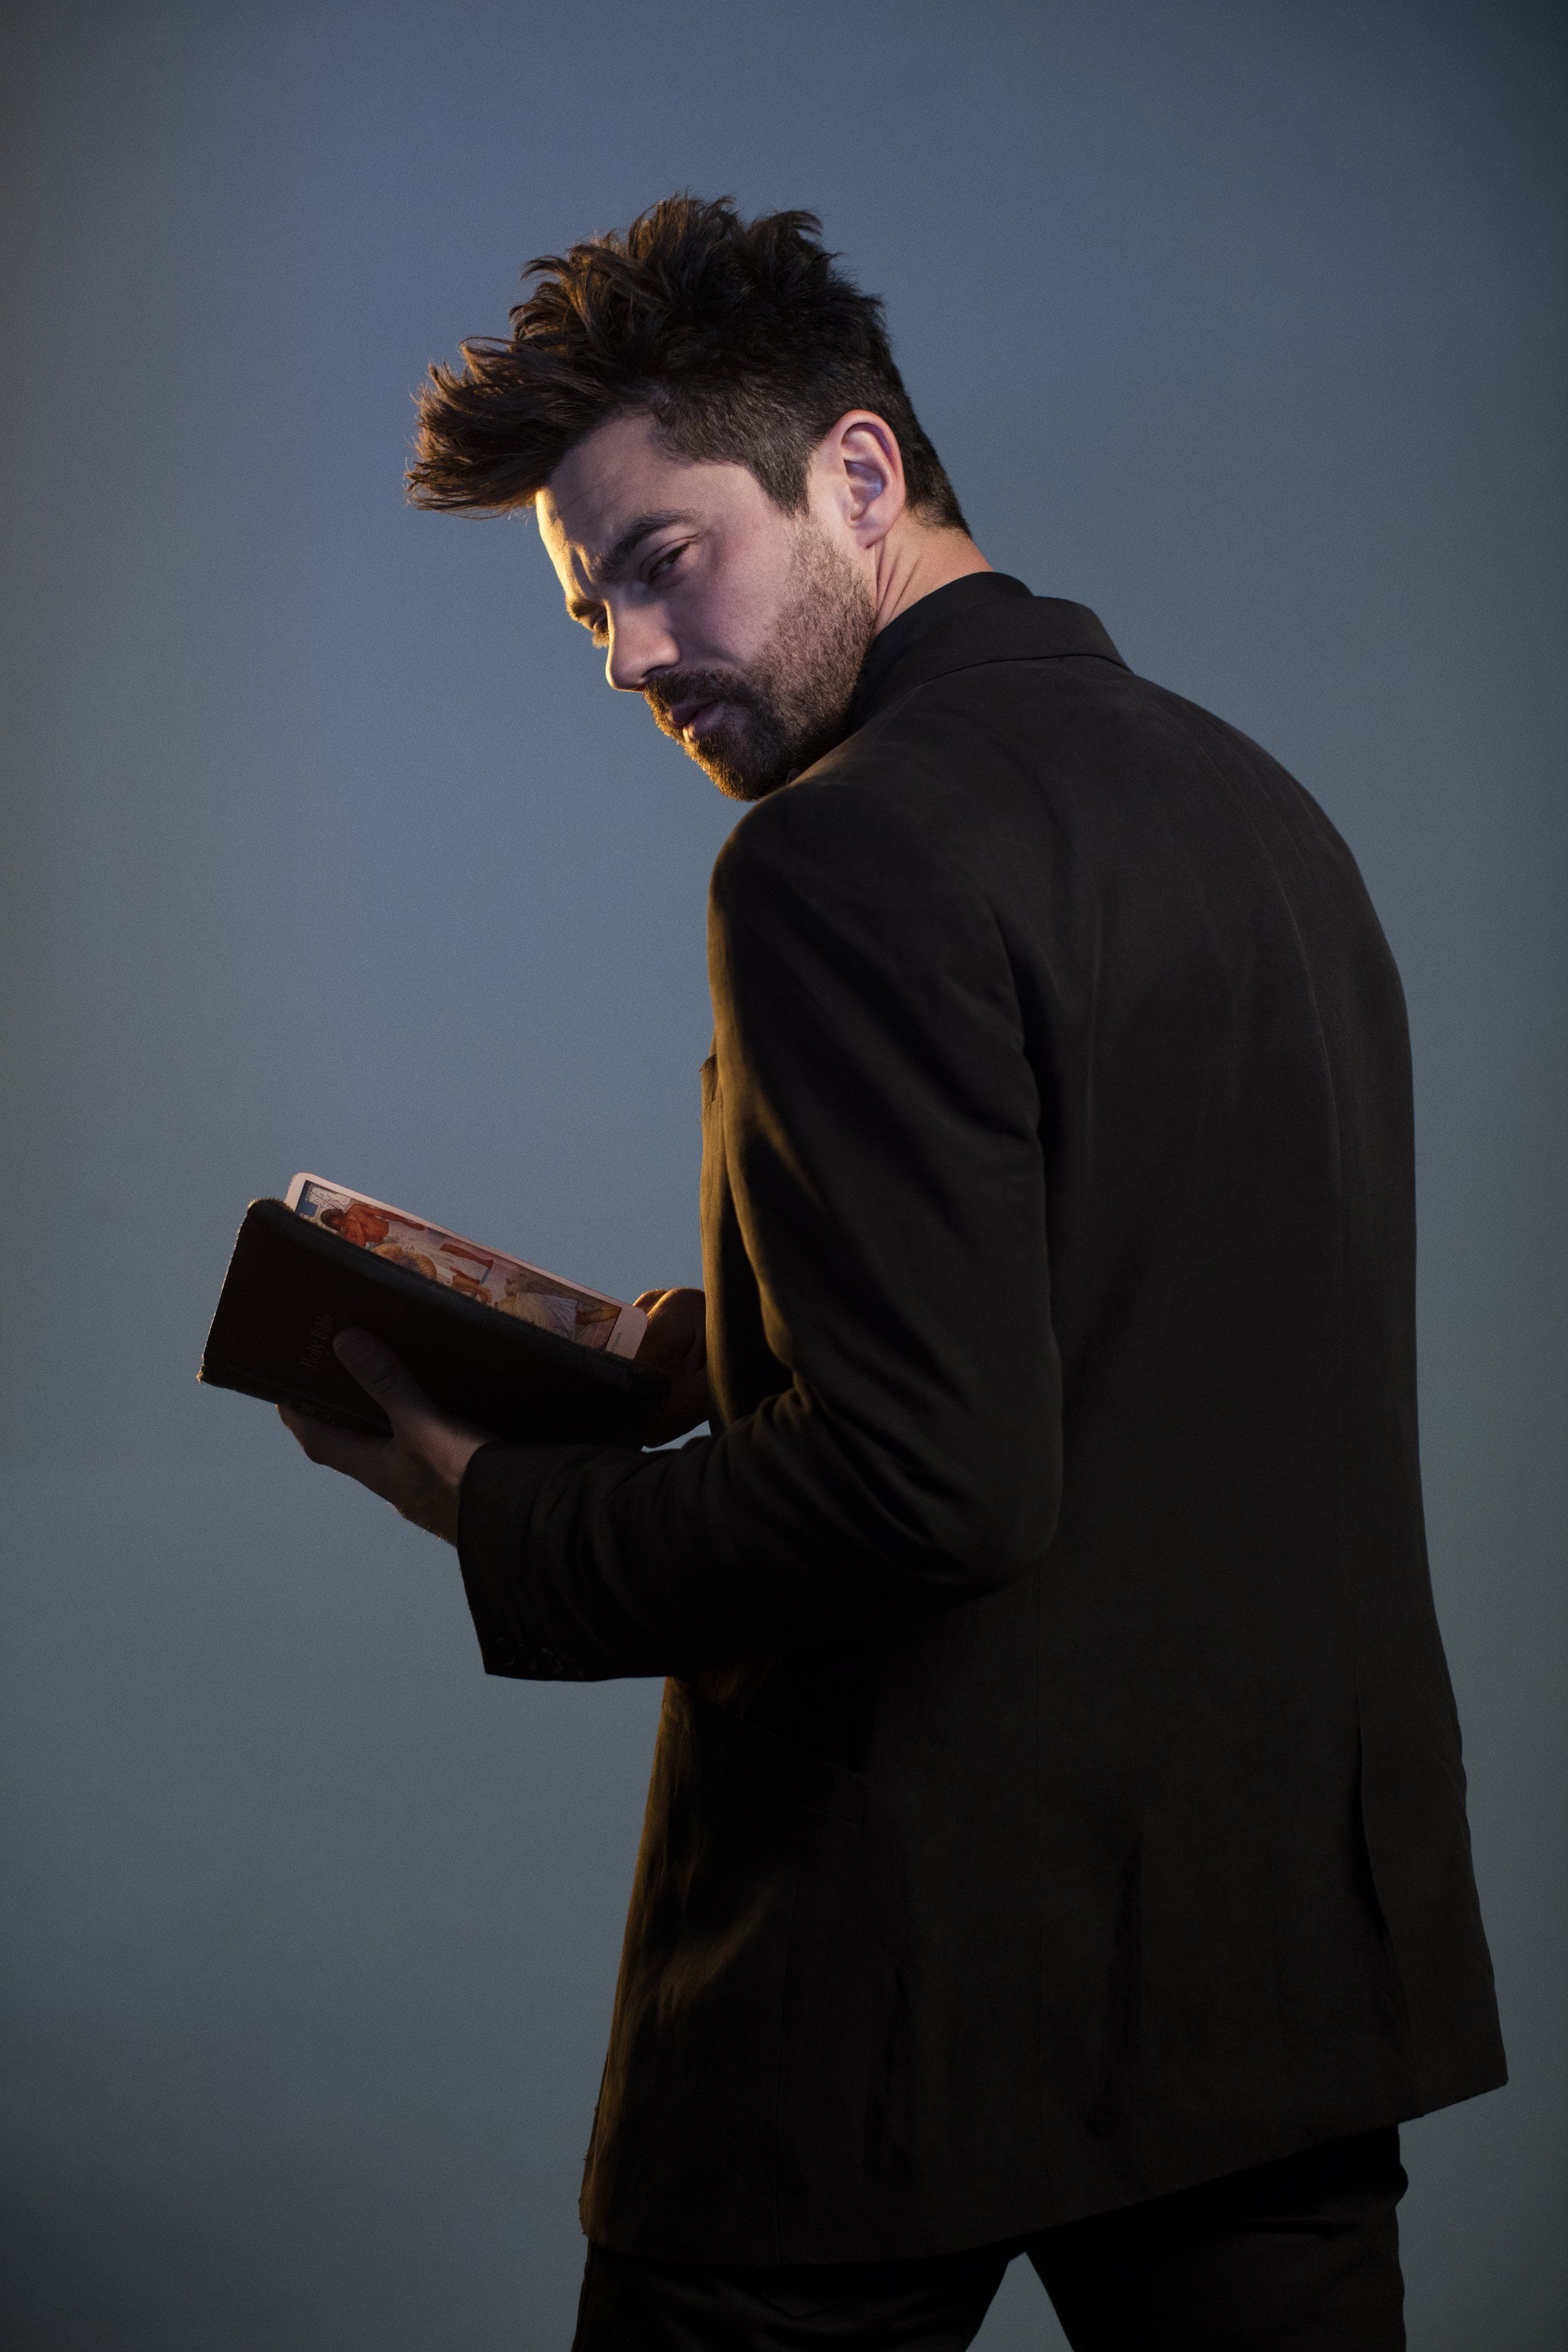 Preacher S1 Dominic Cooper as Jesse Custer. Preacher, Dominic cooper, Portrait inspiration